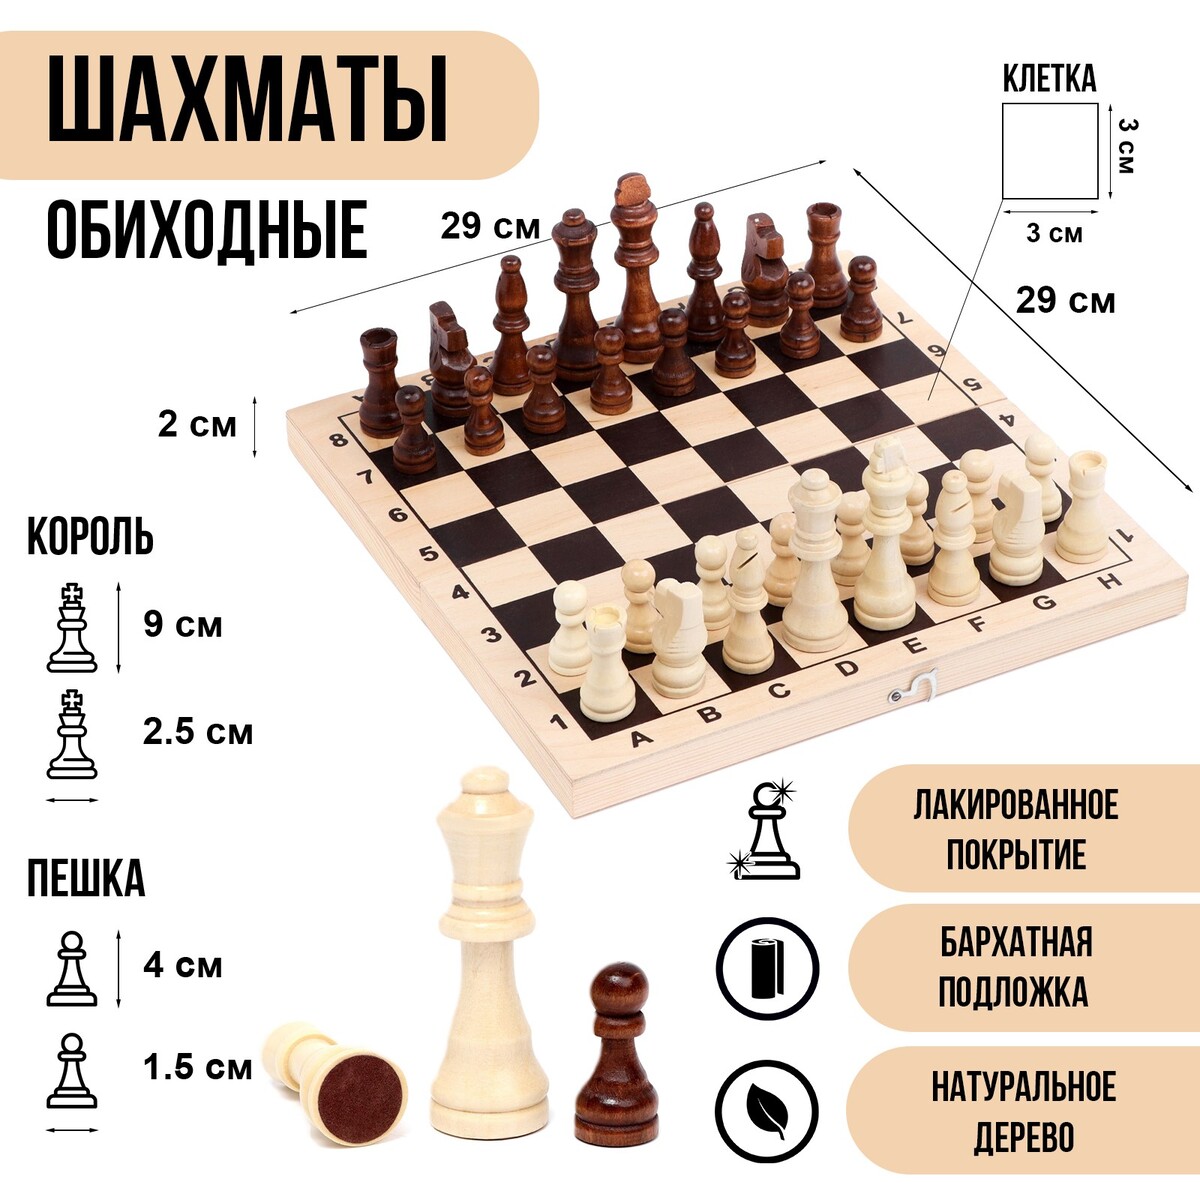 Шахматы деревянные обиходные 29 х 29 см, король h-9 см, пешка h-4 см russia настольная игра шахматы деревянные n585 h37170